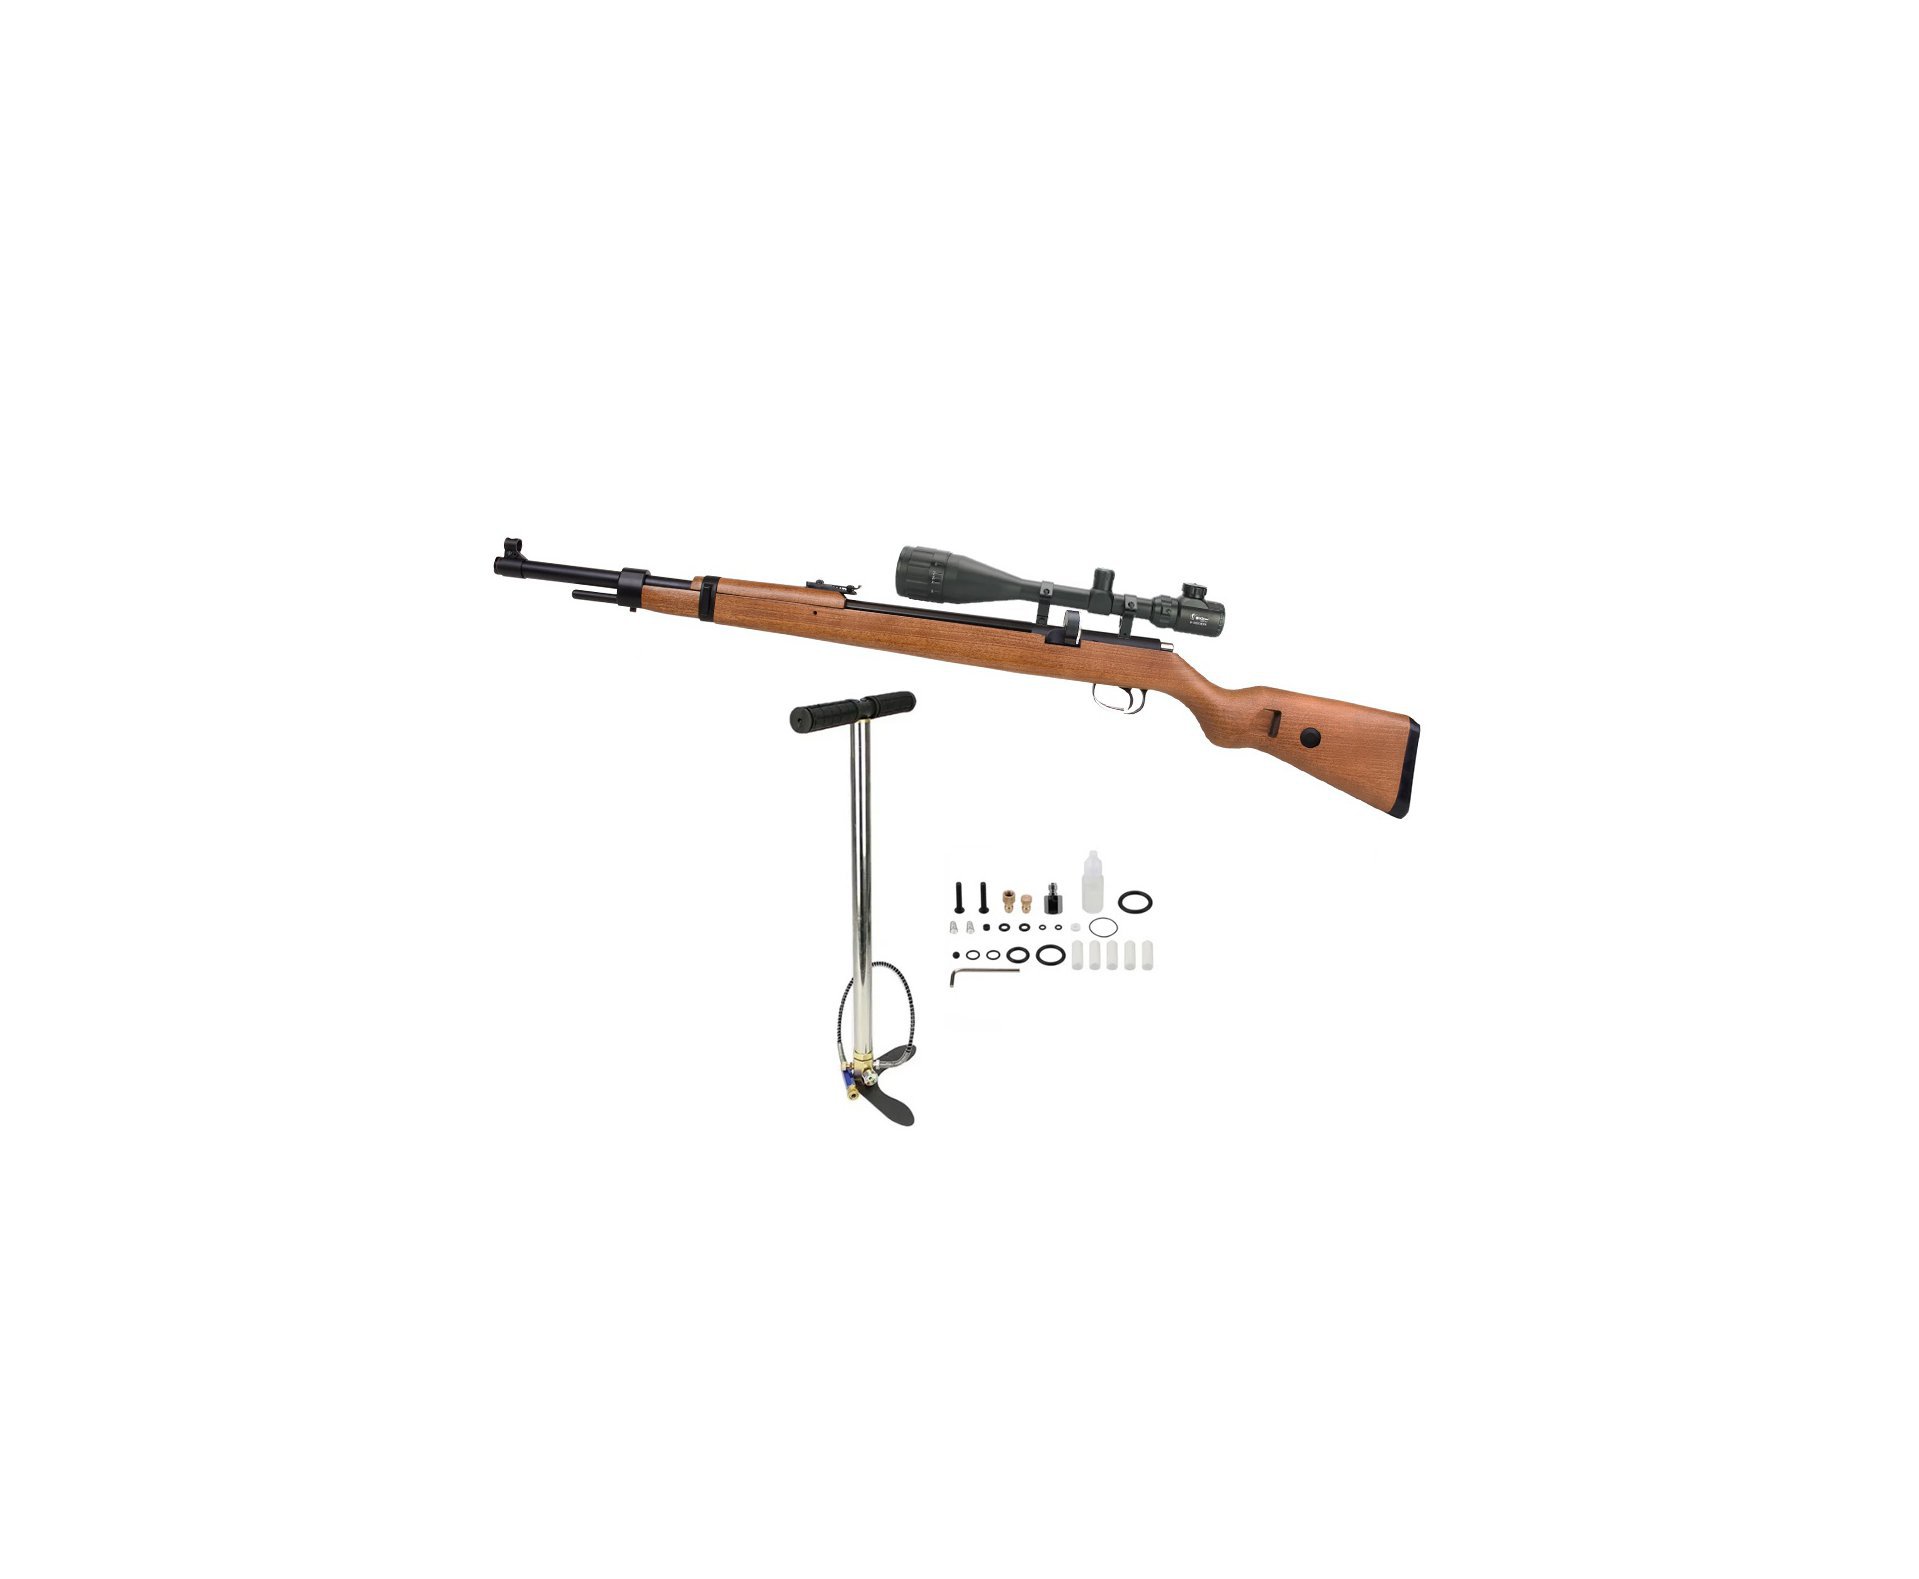 Carabina de Pressão PCP Mauser K98 5.5mm 10 tiros - Diana + Bomba + Luneta 6-24x50